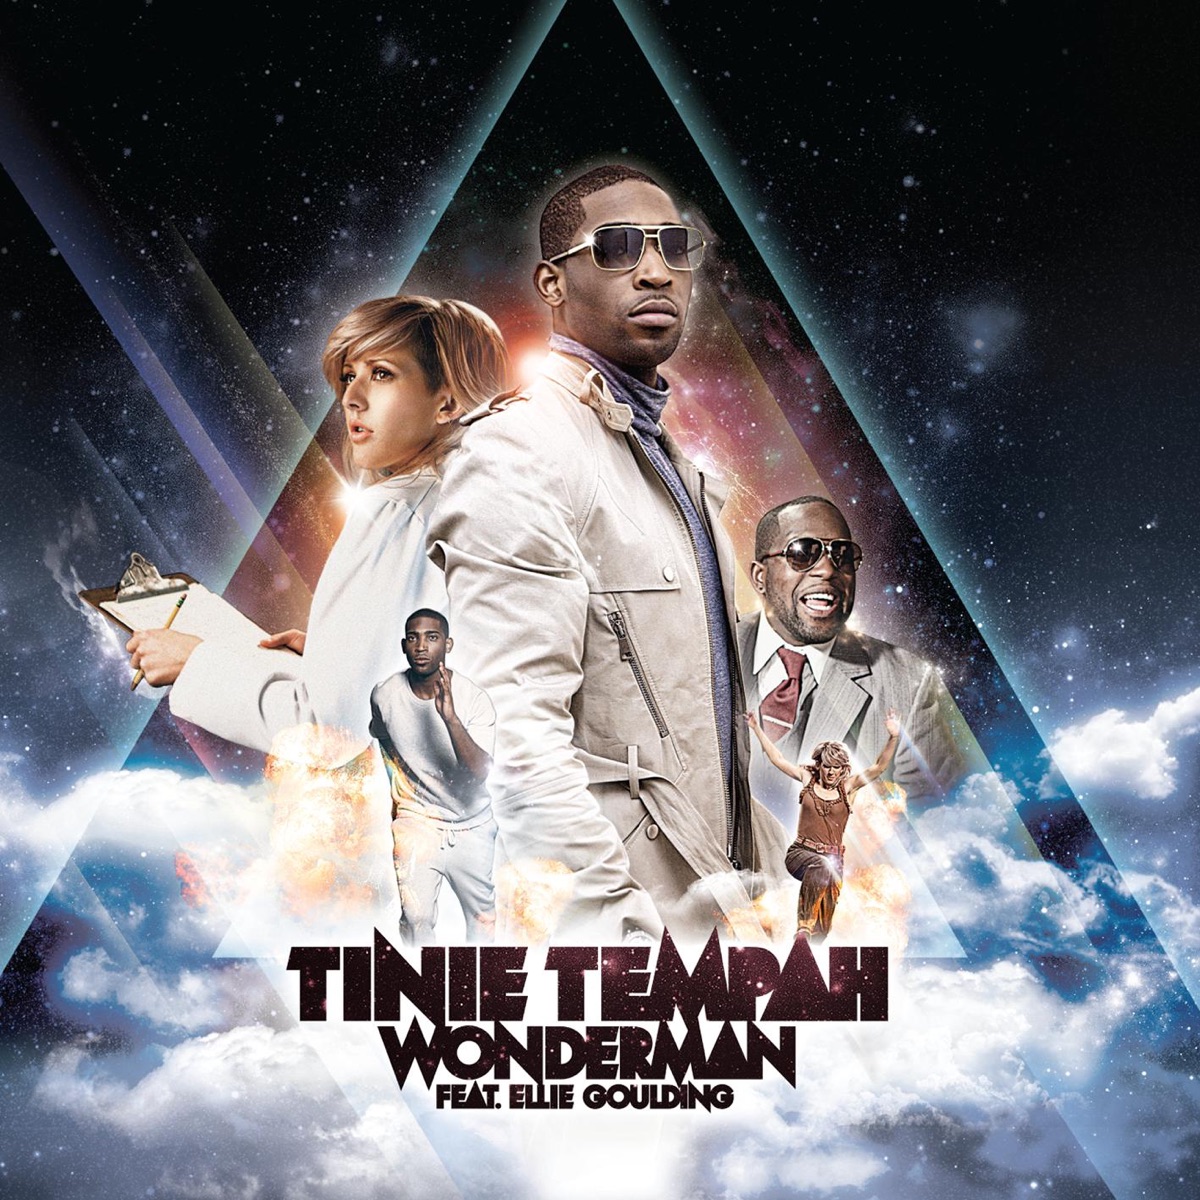 Tinie Tempah ft. featuring Ellie Goulding Wonderman cover artwork